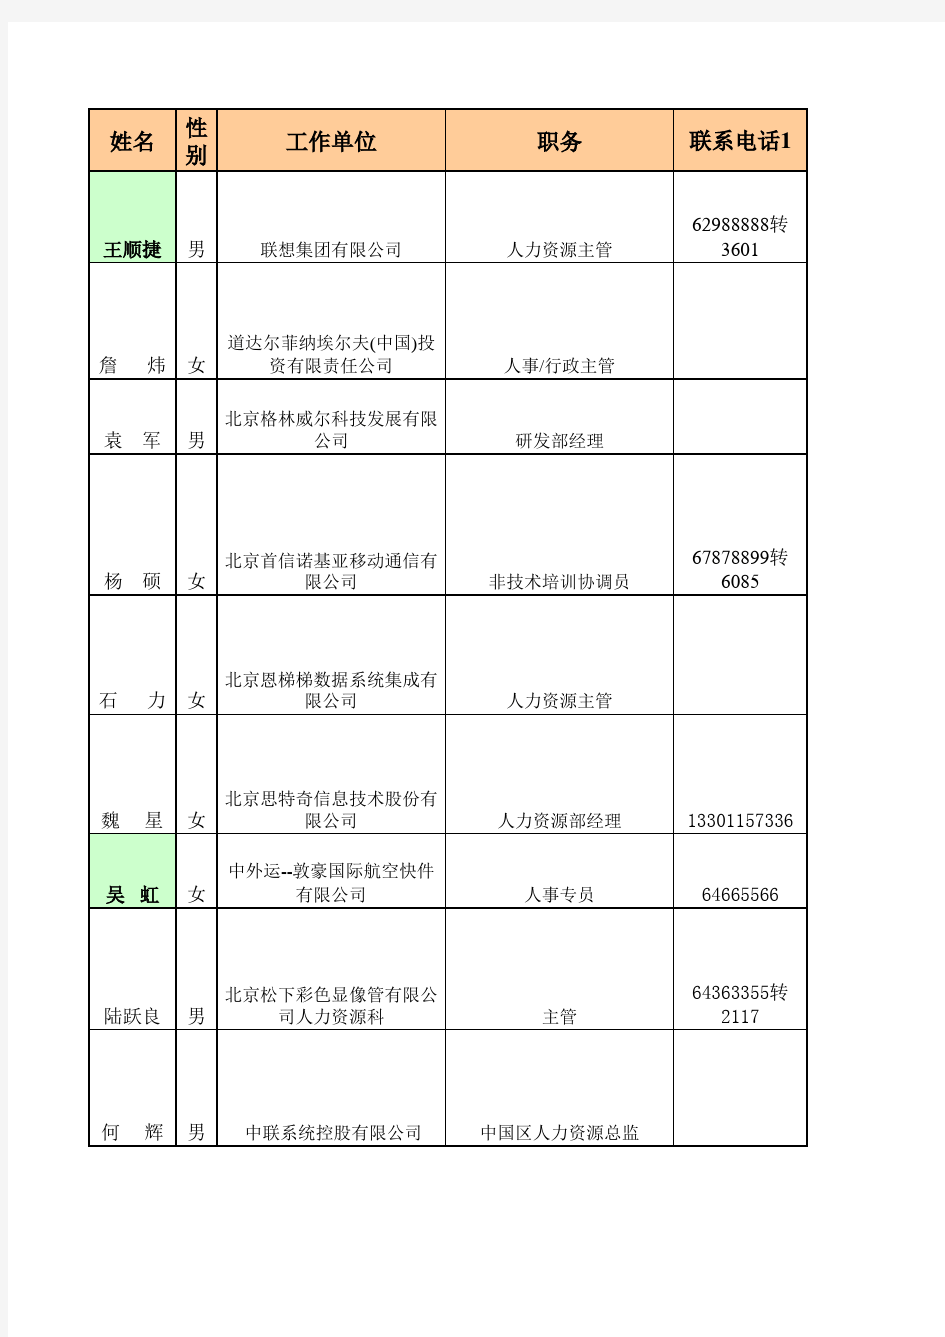 国内大型企业北京公司HR名单